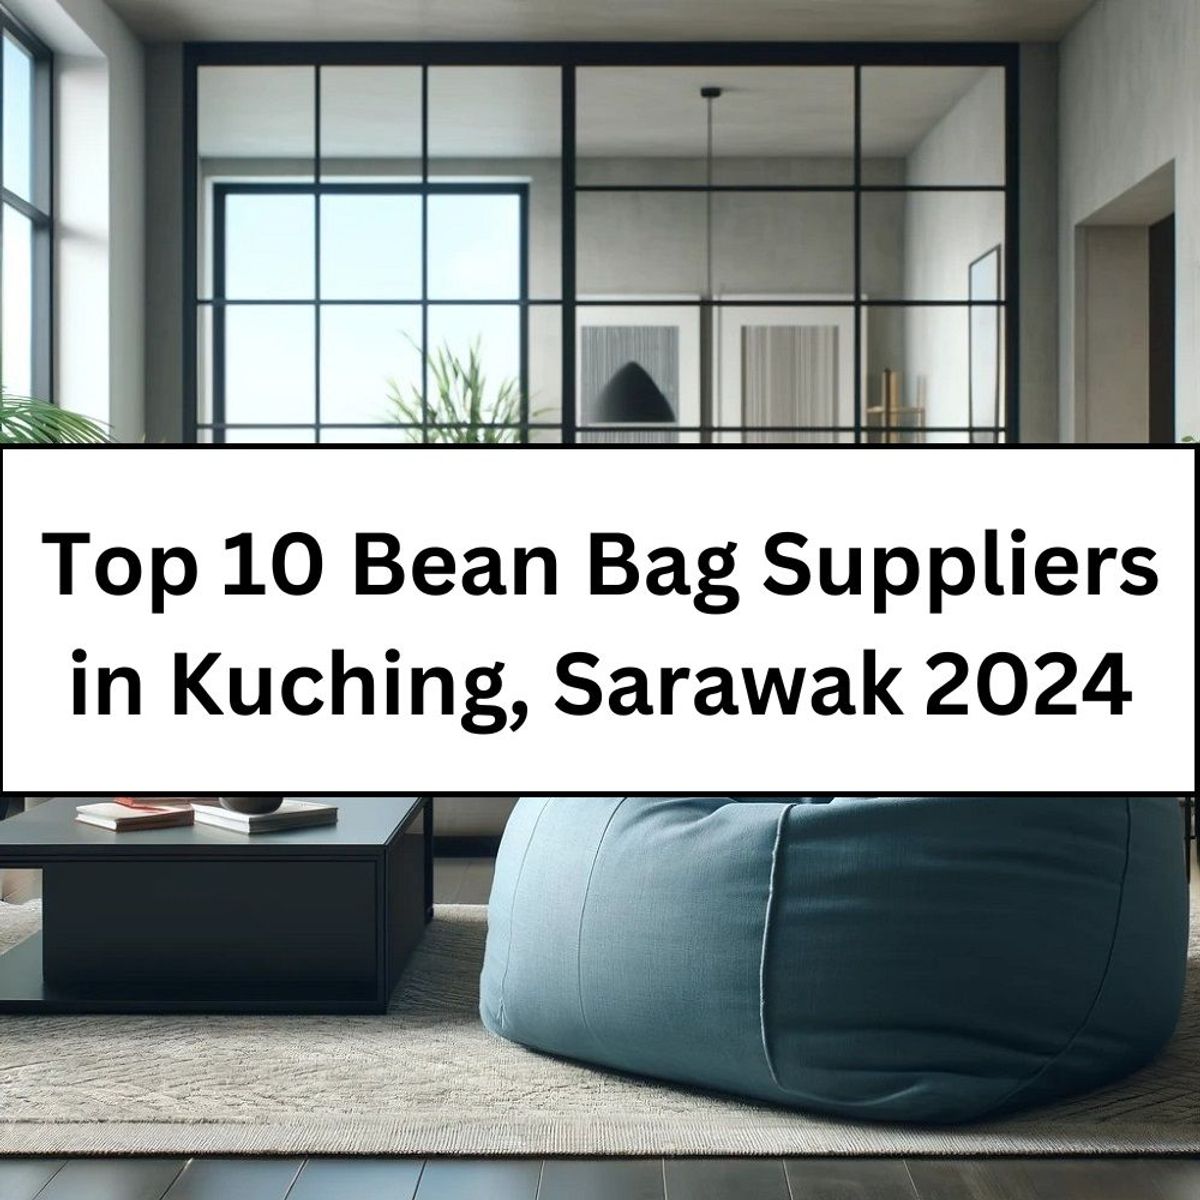 Top 10 Bean Bag Suppliers in Kuching, Sarawak 2024